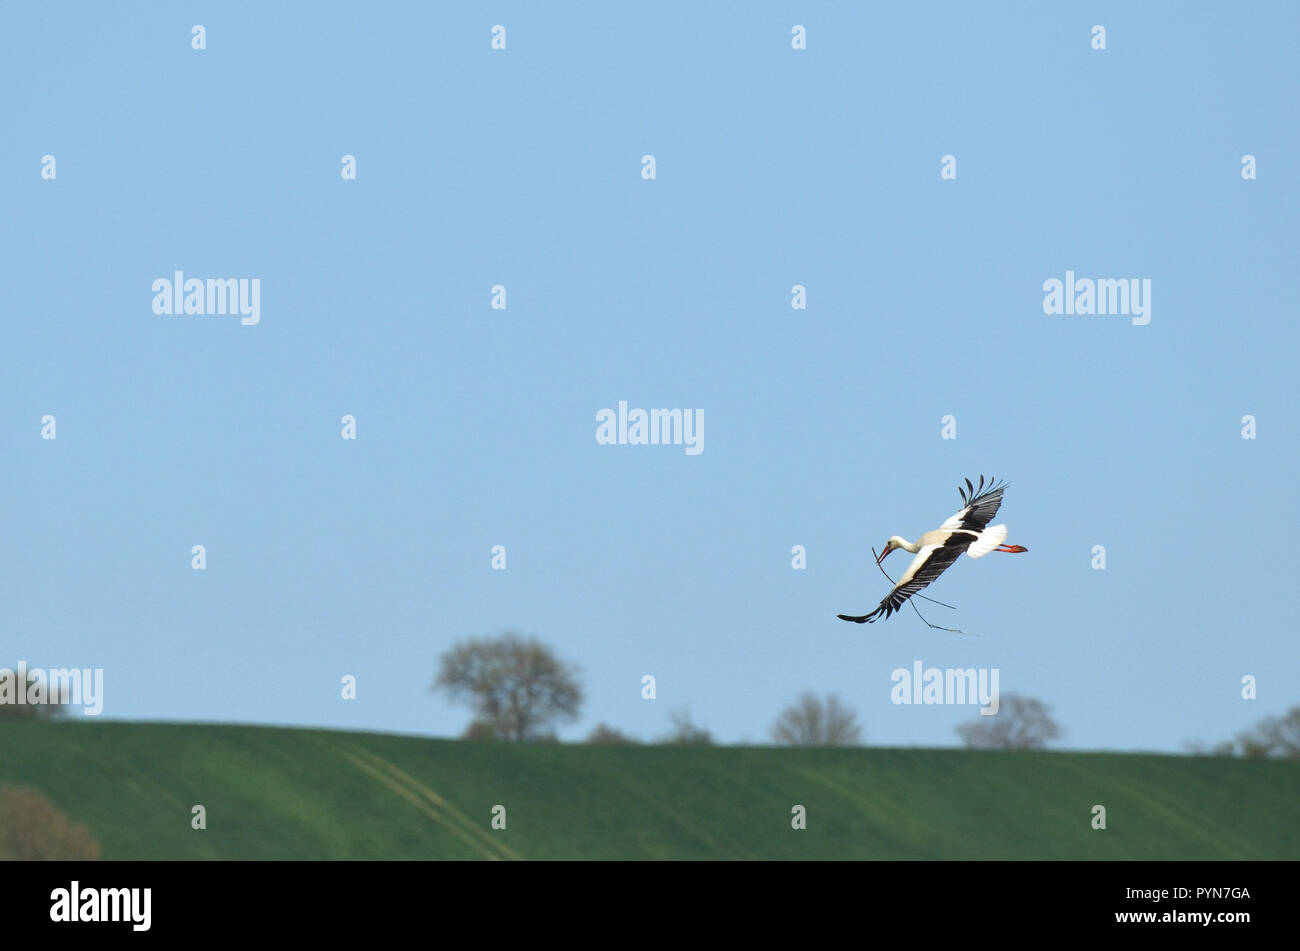 Une Cigogne blanche Ciconia ciconia) volant avec des matériaux pour construire son nid près de la "domaine aux oiseaux'', le sud-ouest de la France. Banque D'Images